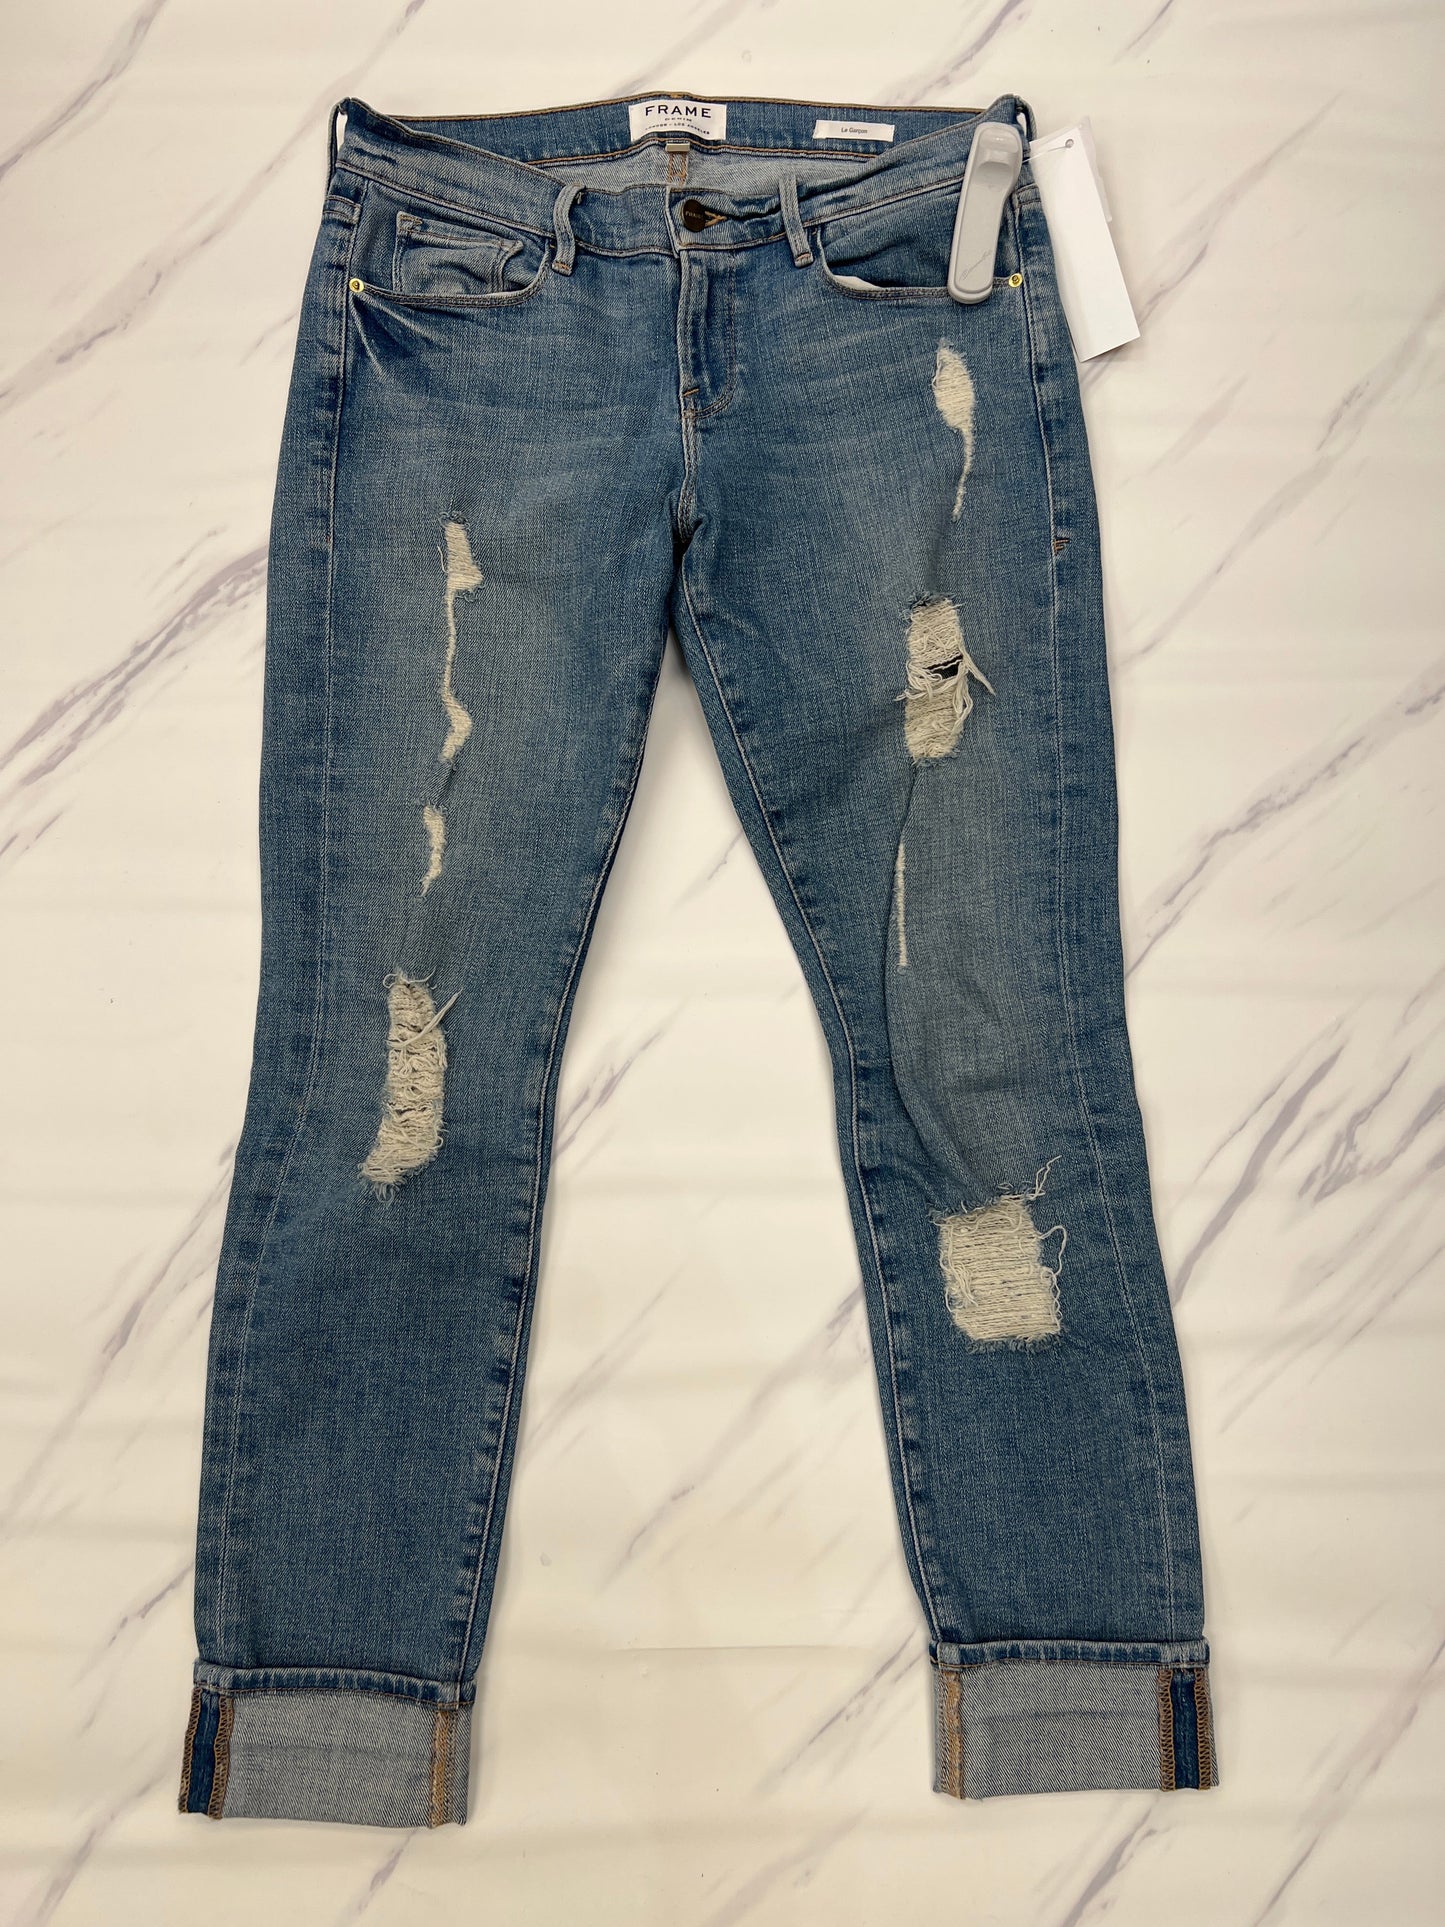 Jeans Designer Frame, Size 2